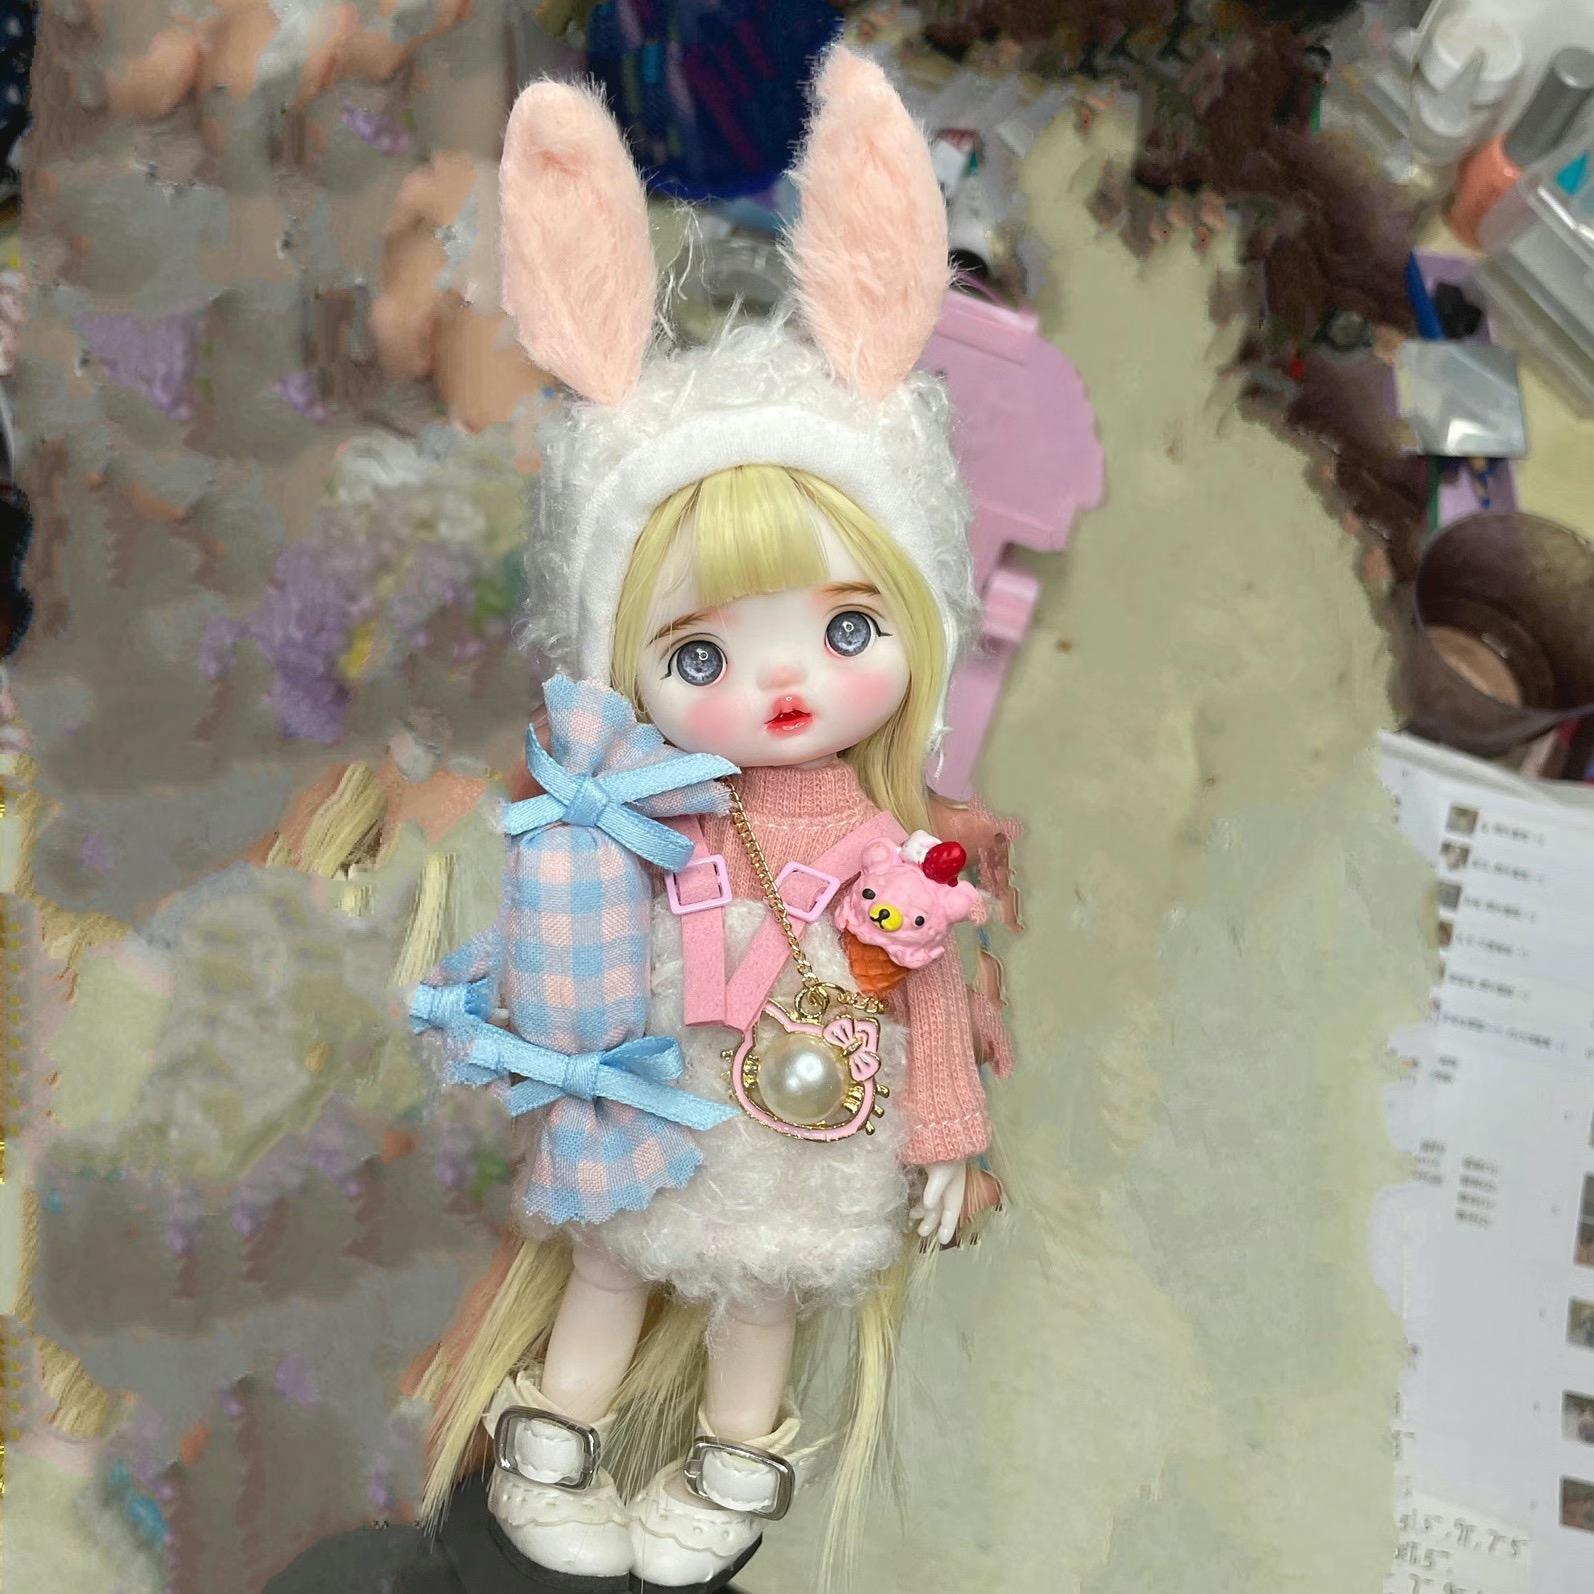 Mini poupées BJD mignonnes faites à la main de 17cm, maquillage, visage mobile, accessoires de vêtements de mode, poupée 1/8 pour filles, jouet pour enfants, cadeaux